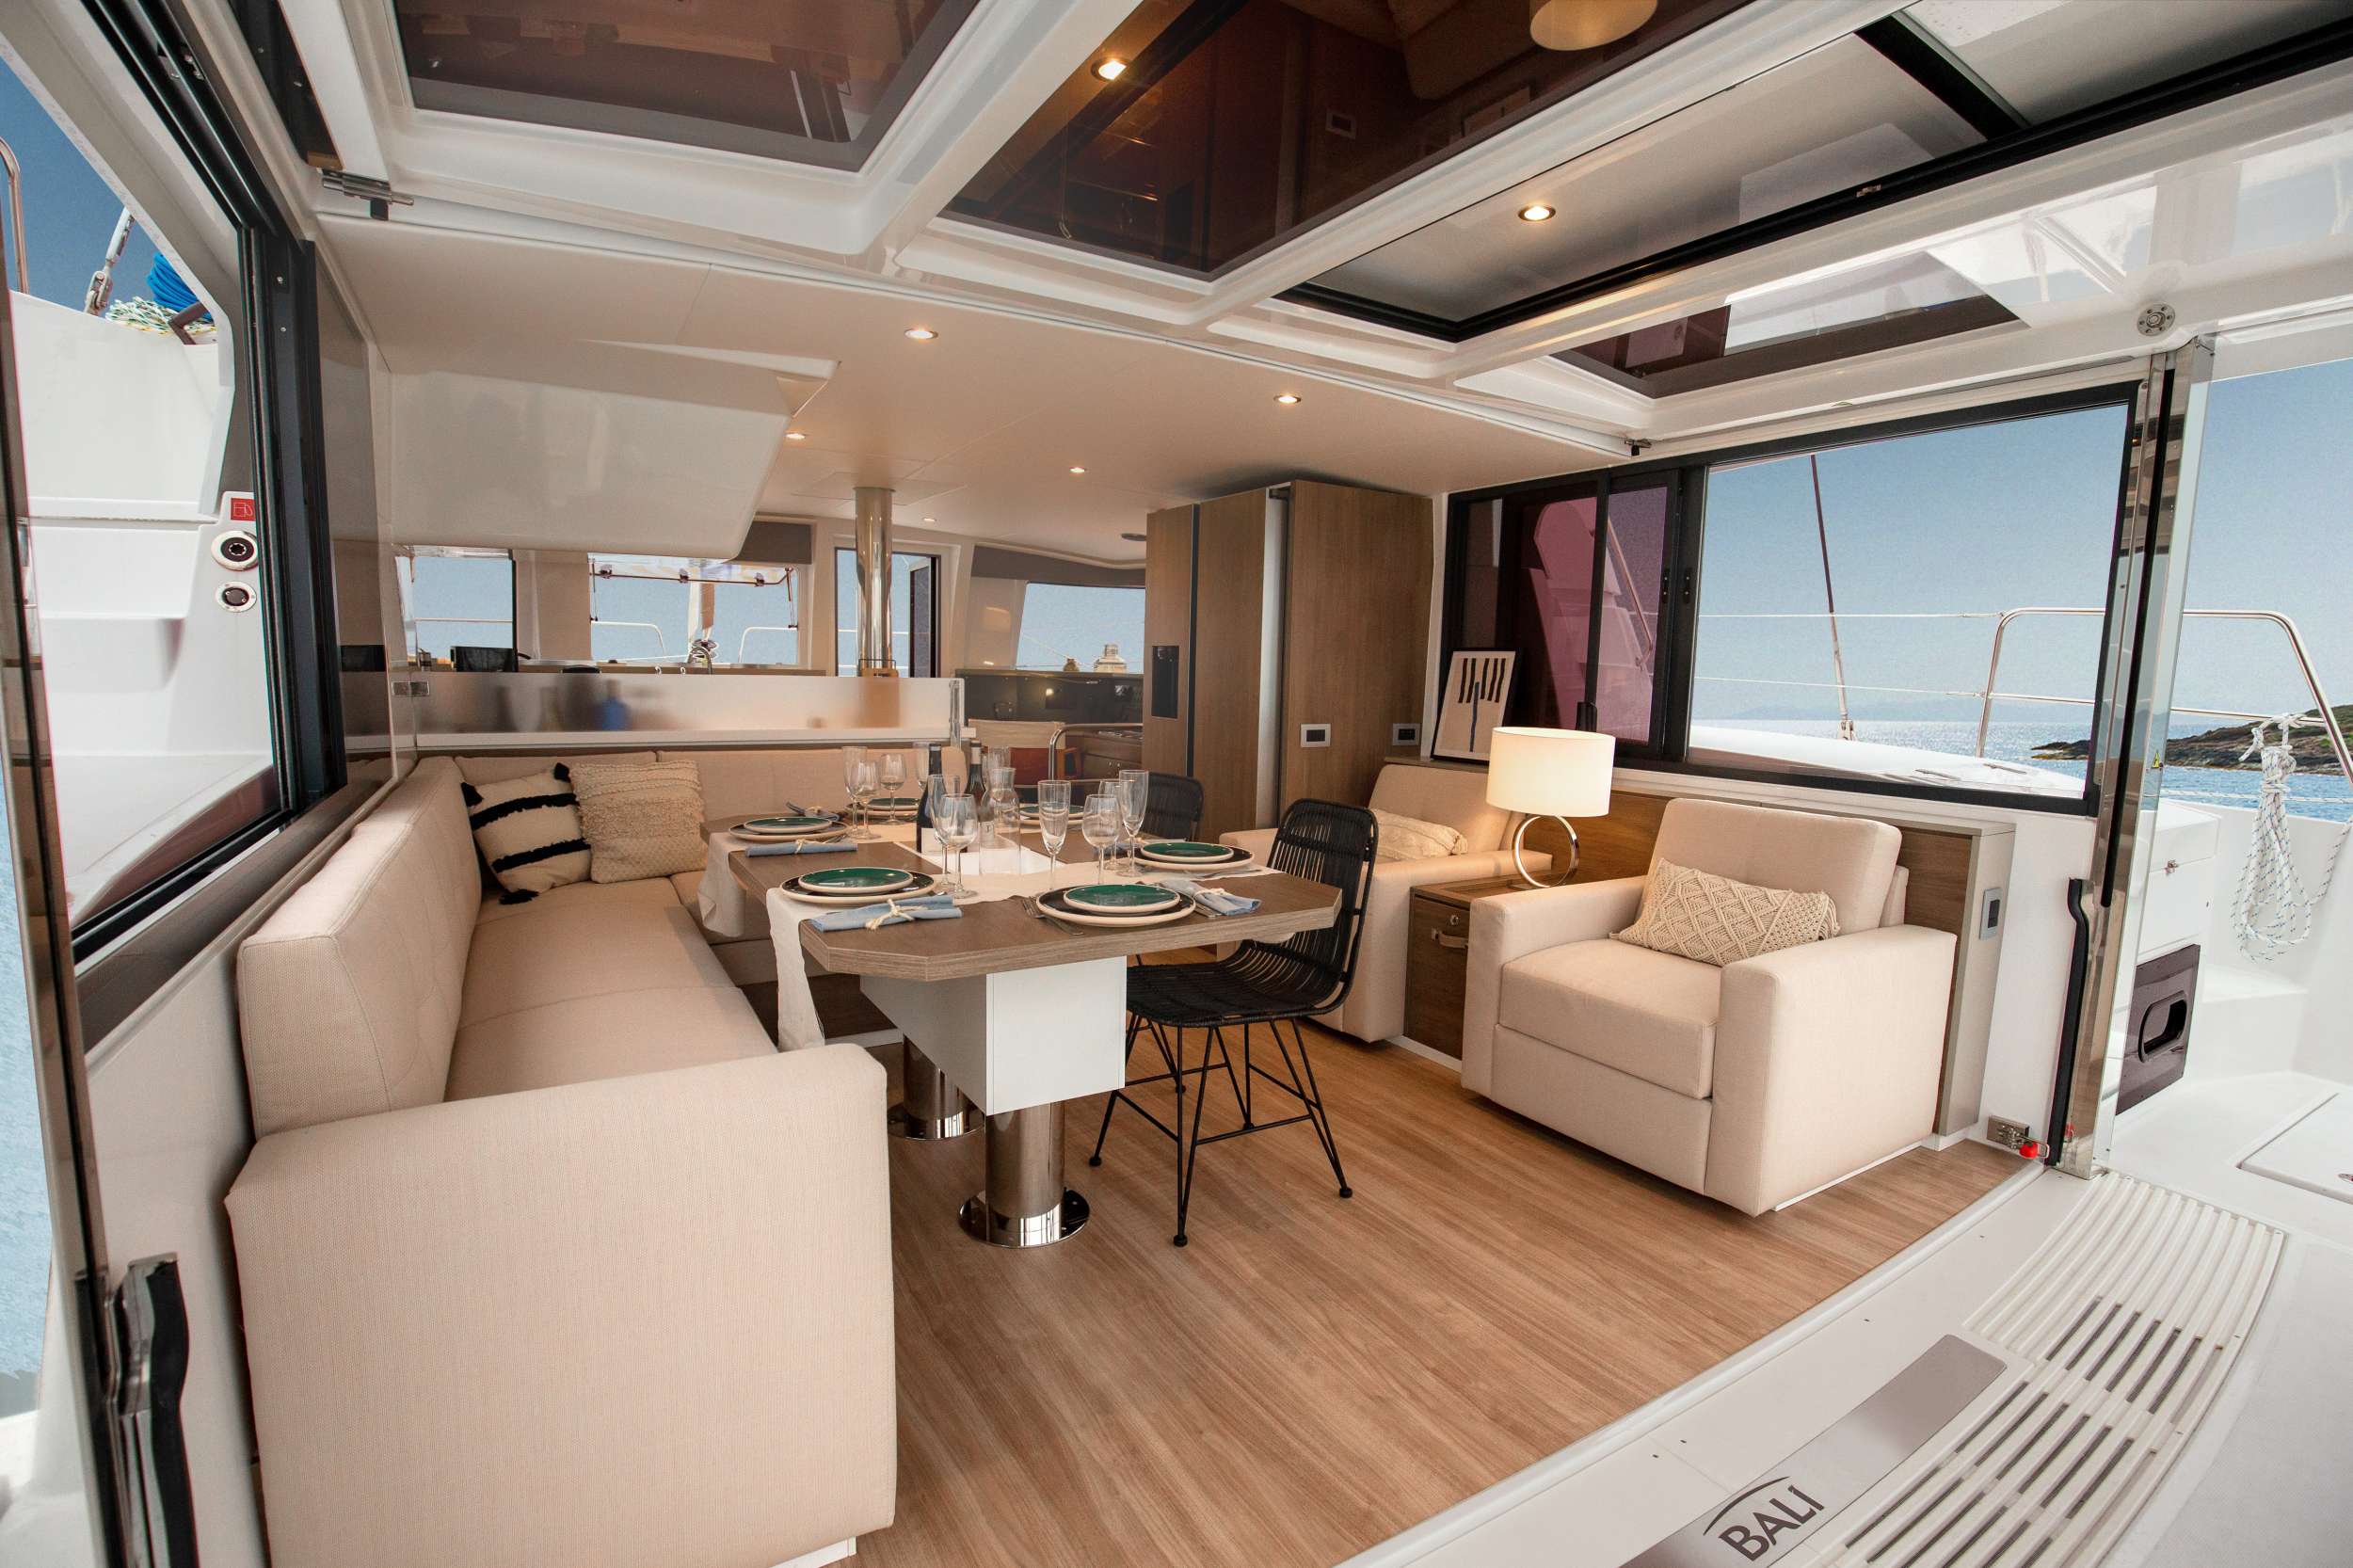 KNOWKER - Yacht Charter Portocolom & Boat hire in Balearics & Spain 2